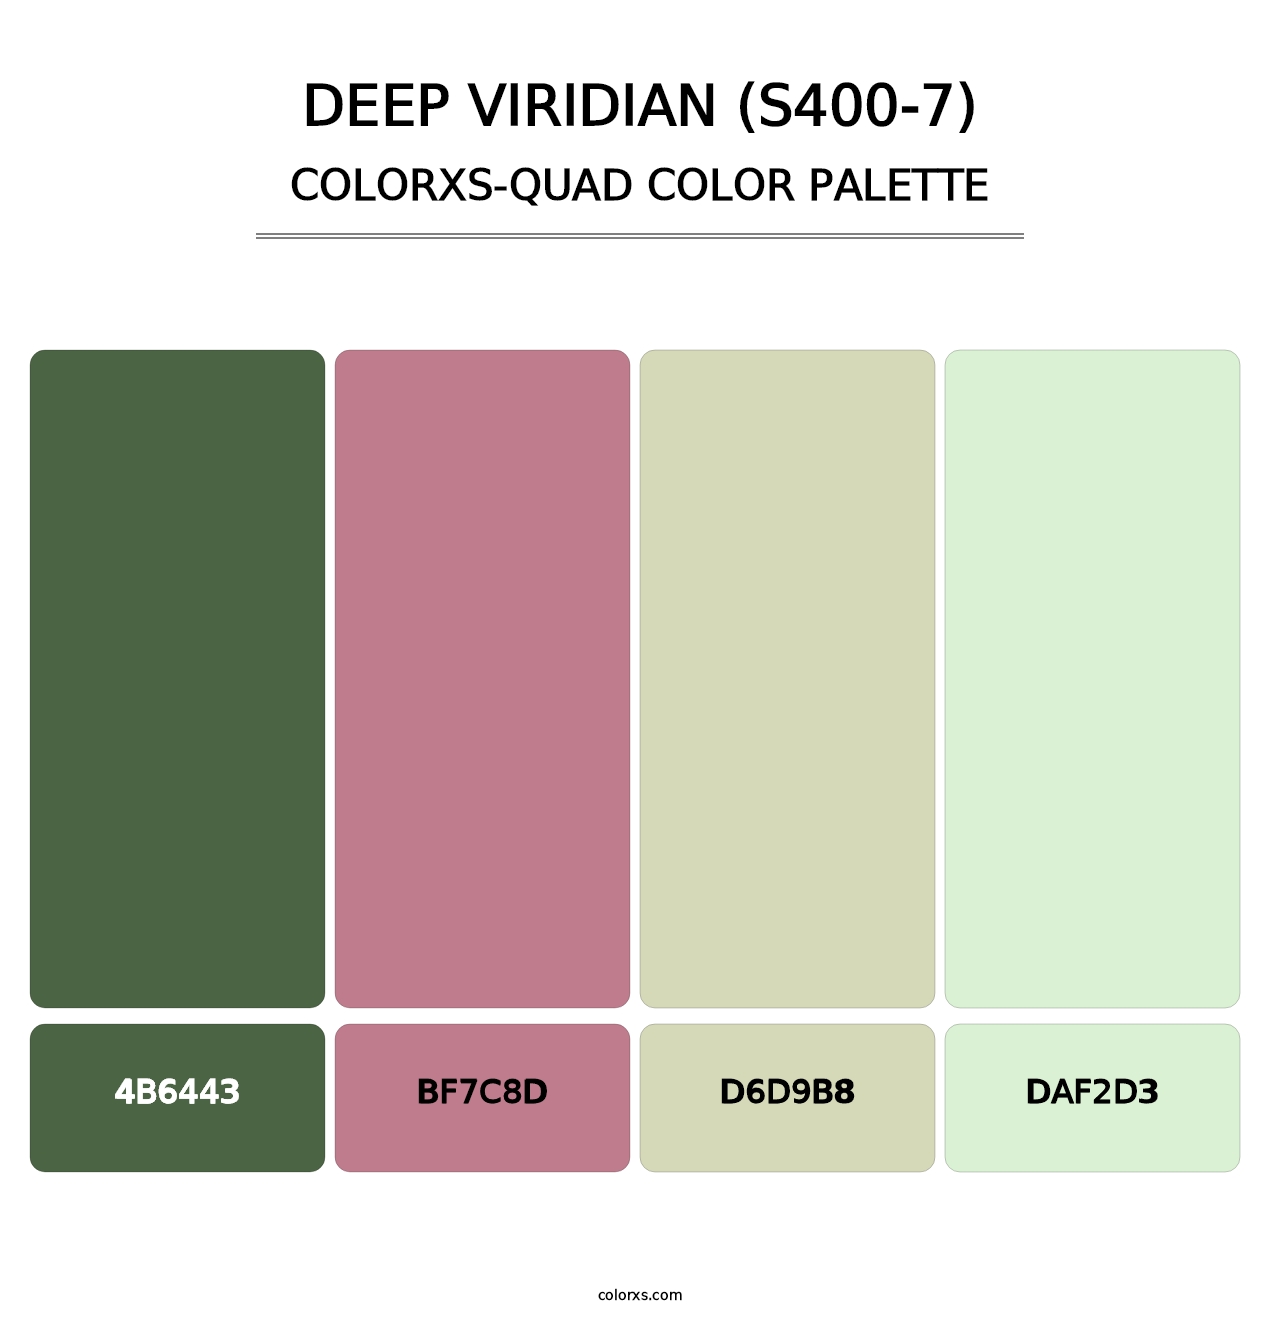 Deep Viridian (S400-7) - Colorxs Quad Palette